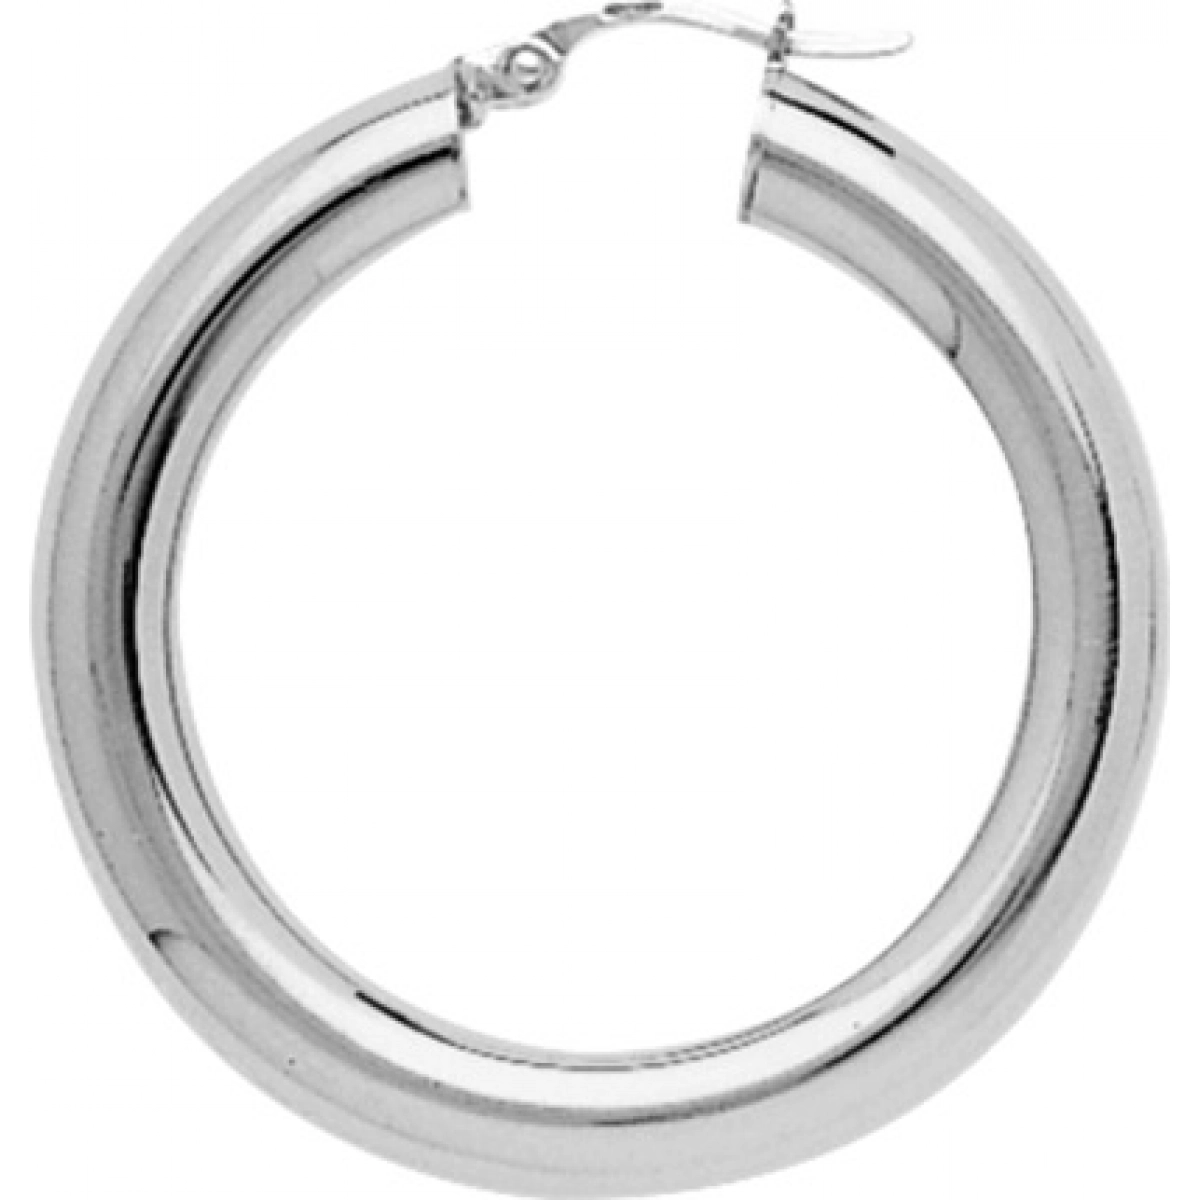 Hoops earrings pair 925 Silver Lua Blanca  235431.0